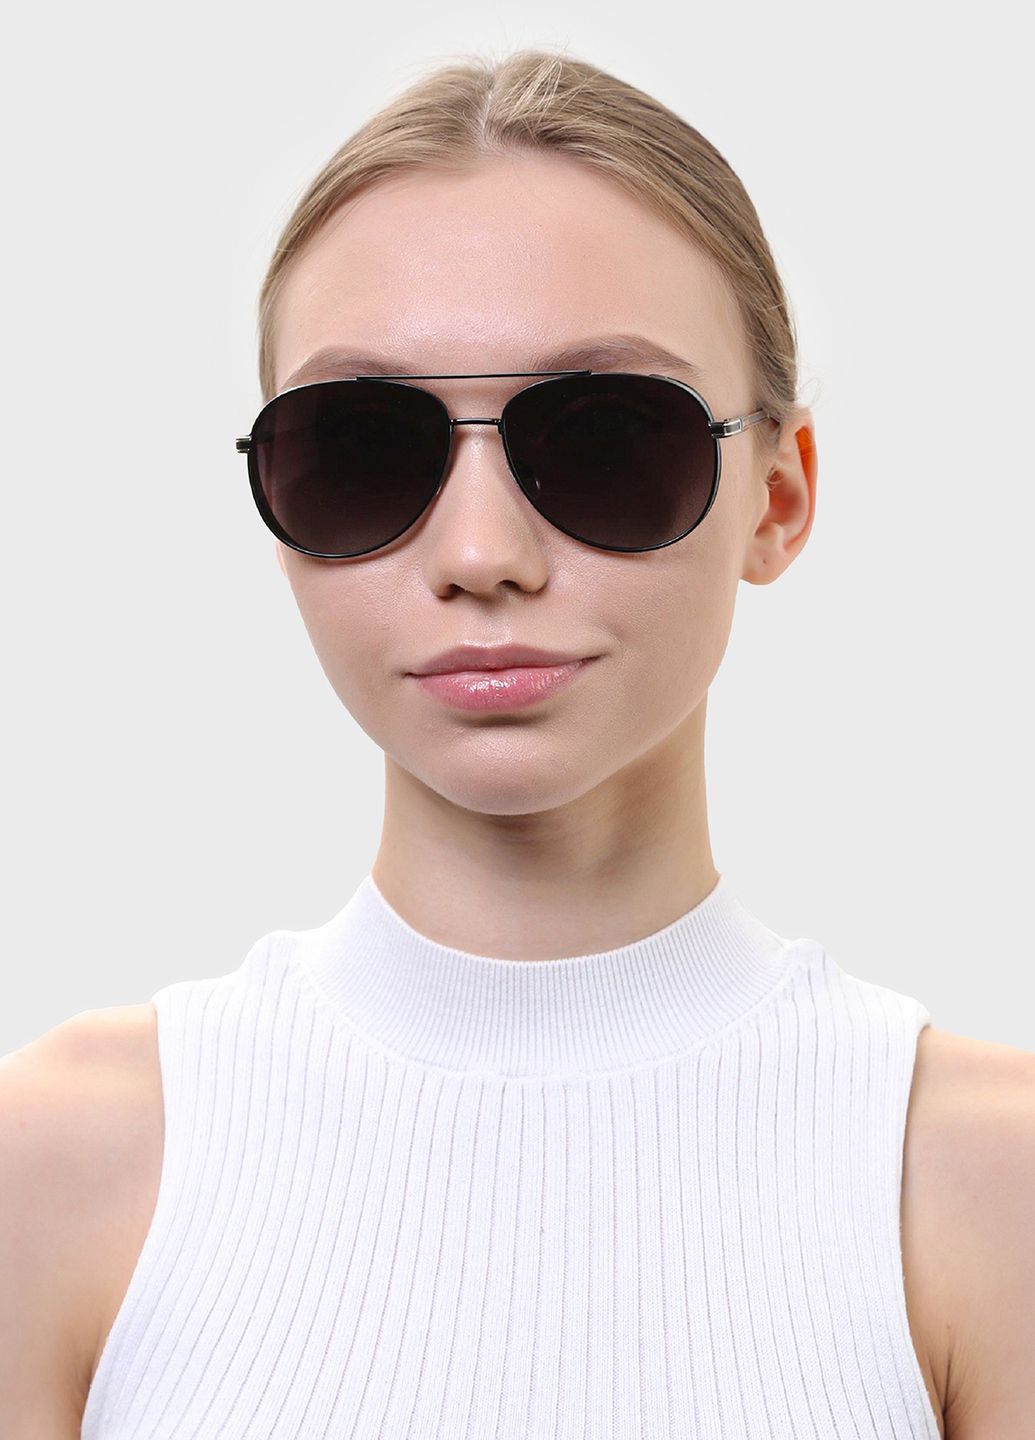 Купить Мужские солнцезащитные очки Marc John с поляризацией MJ0794 190030 - Черный в интернет-магазине